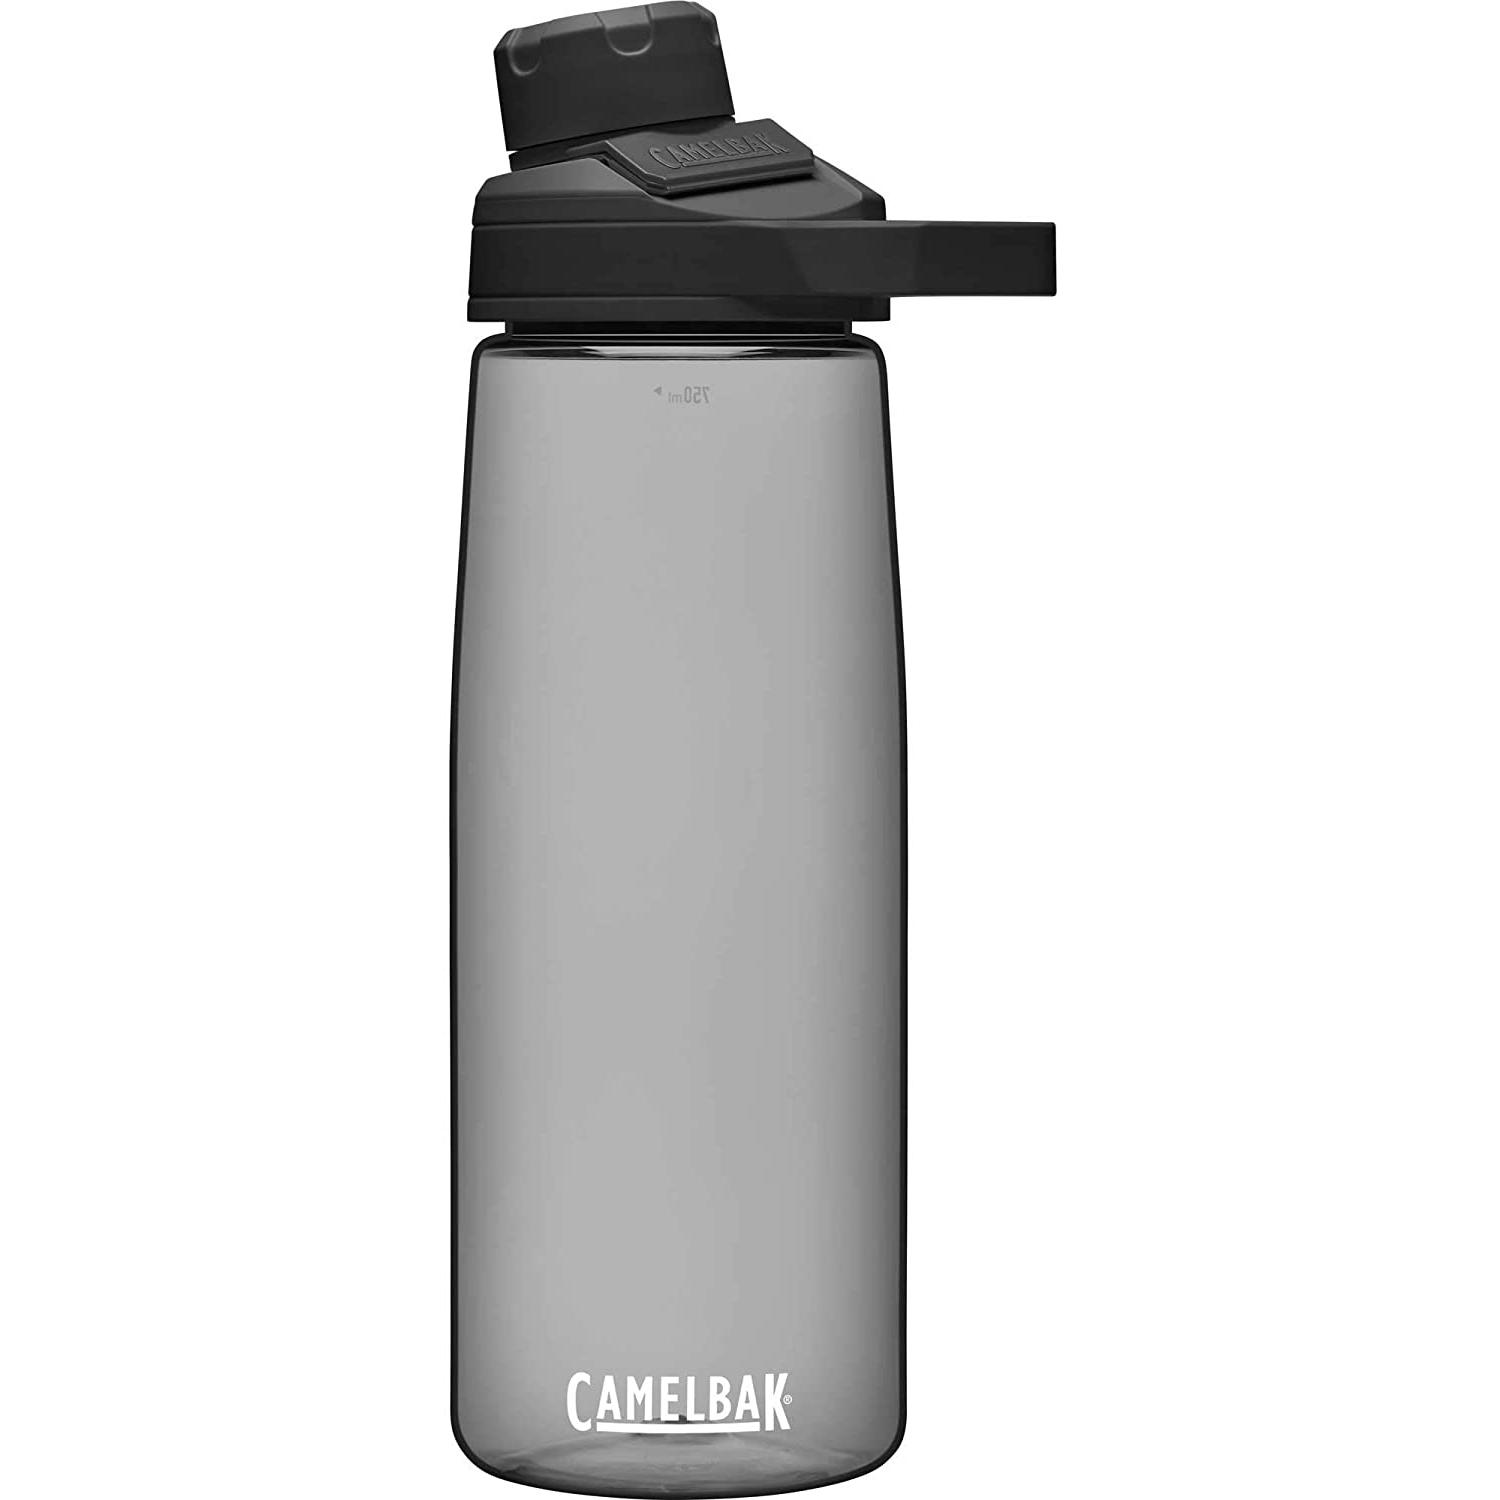 CamelBak Chute Mag Water Bottle for $6.99